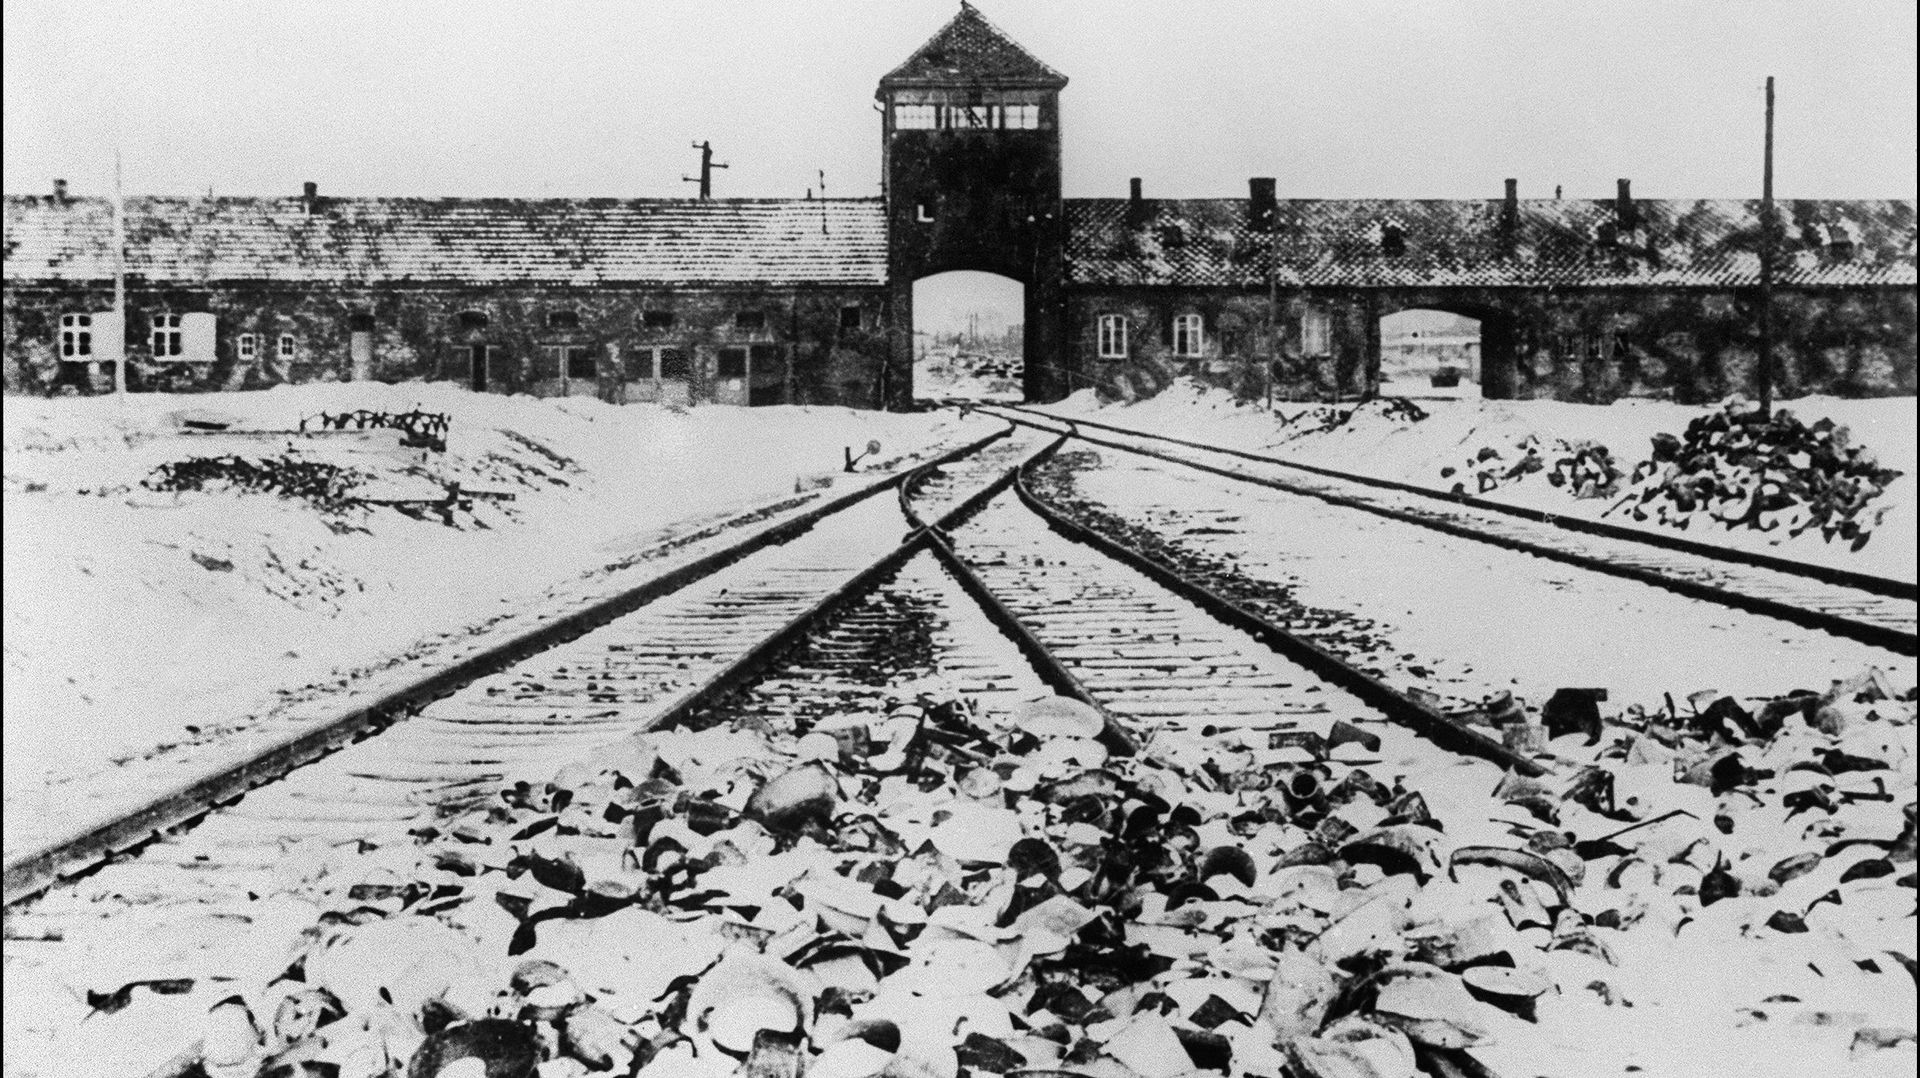 L'entrée d'Auschwitz-Birkenau, camp de concentration et centre d'extermination, photographié en janvier 1945 après la libération.